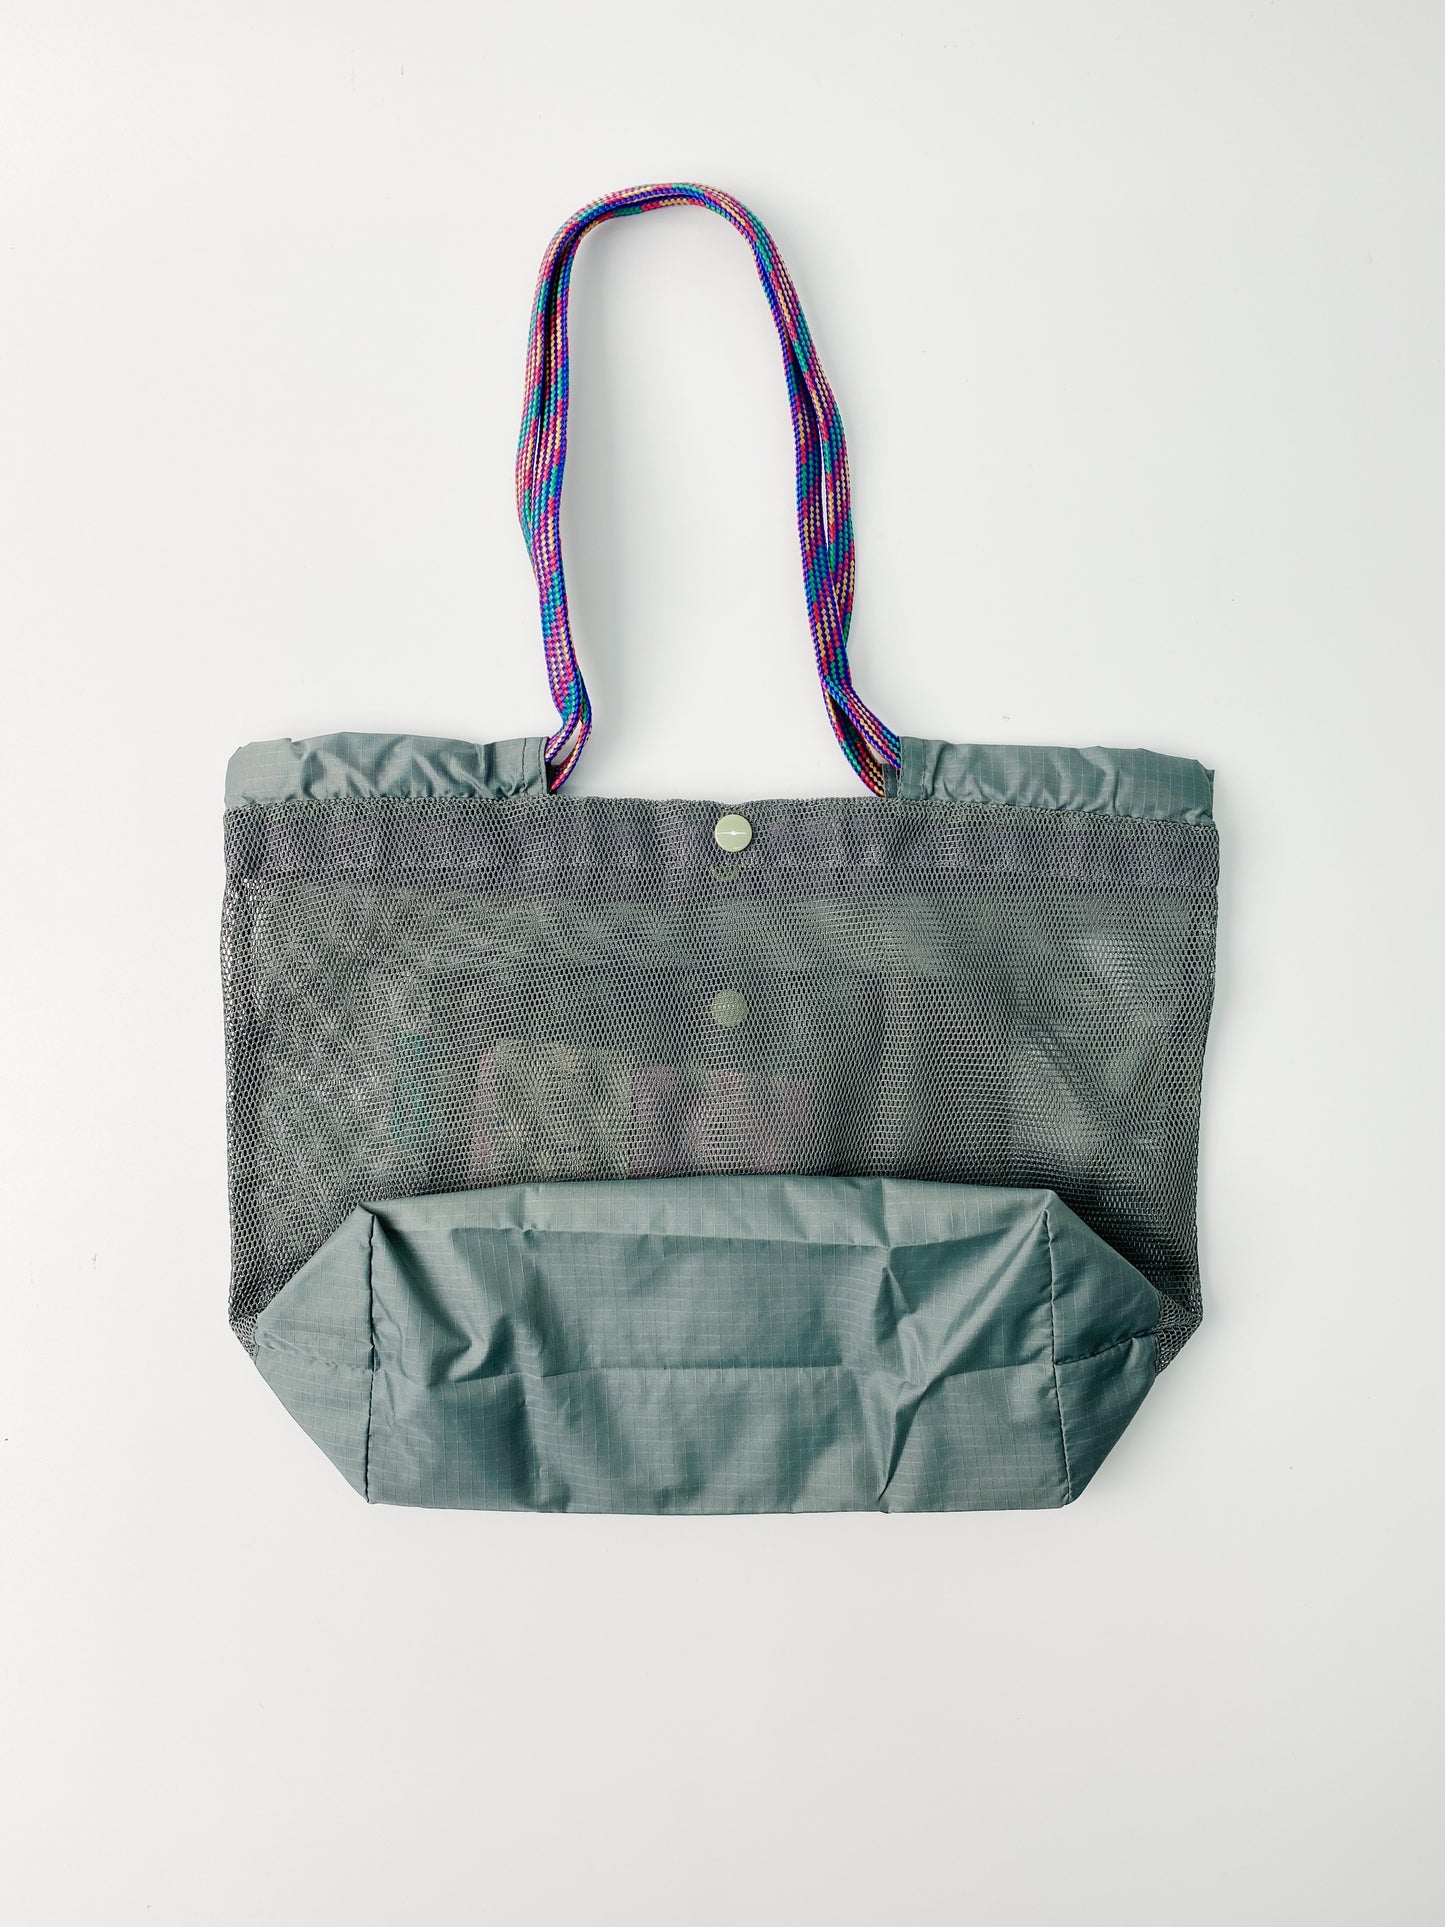 Informal Bag Mesh Checkout Bag Size S (Grey)